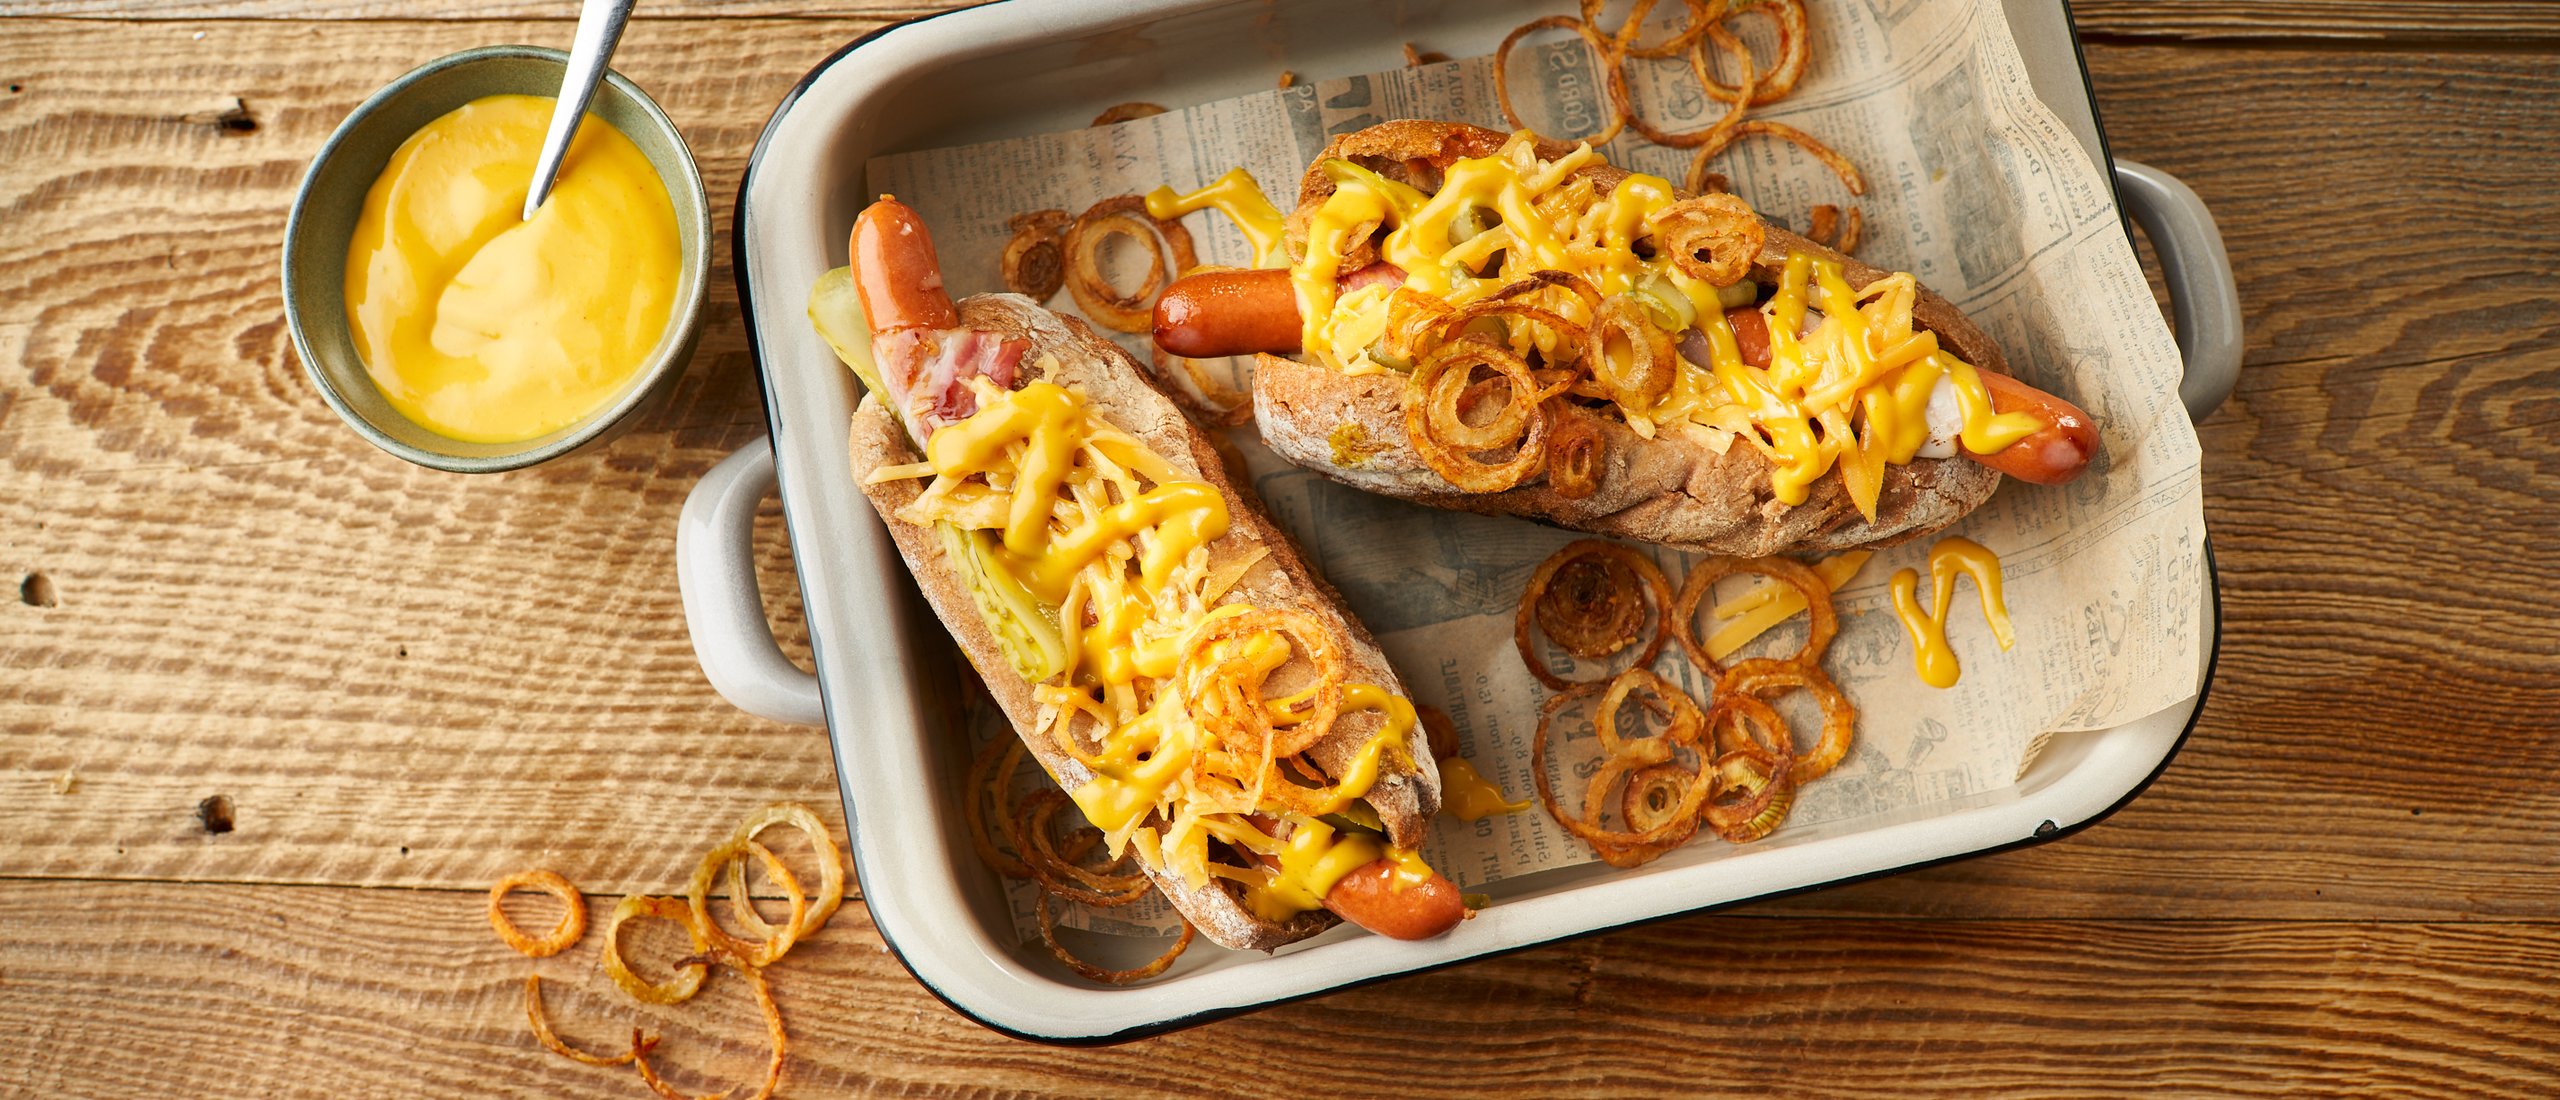 Gegrillter Hot Dog mit Develey Hot Dog Sauce